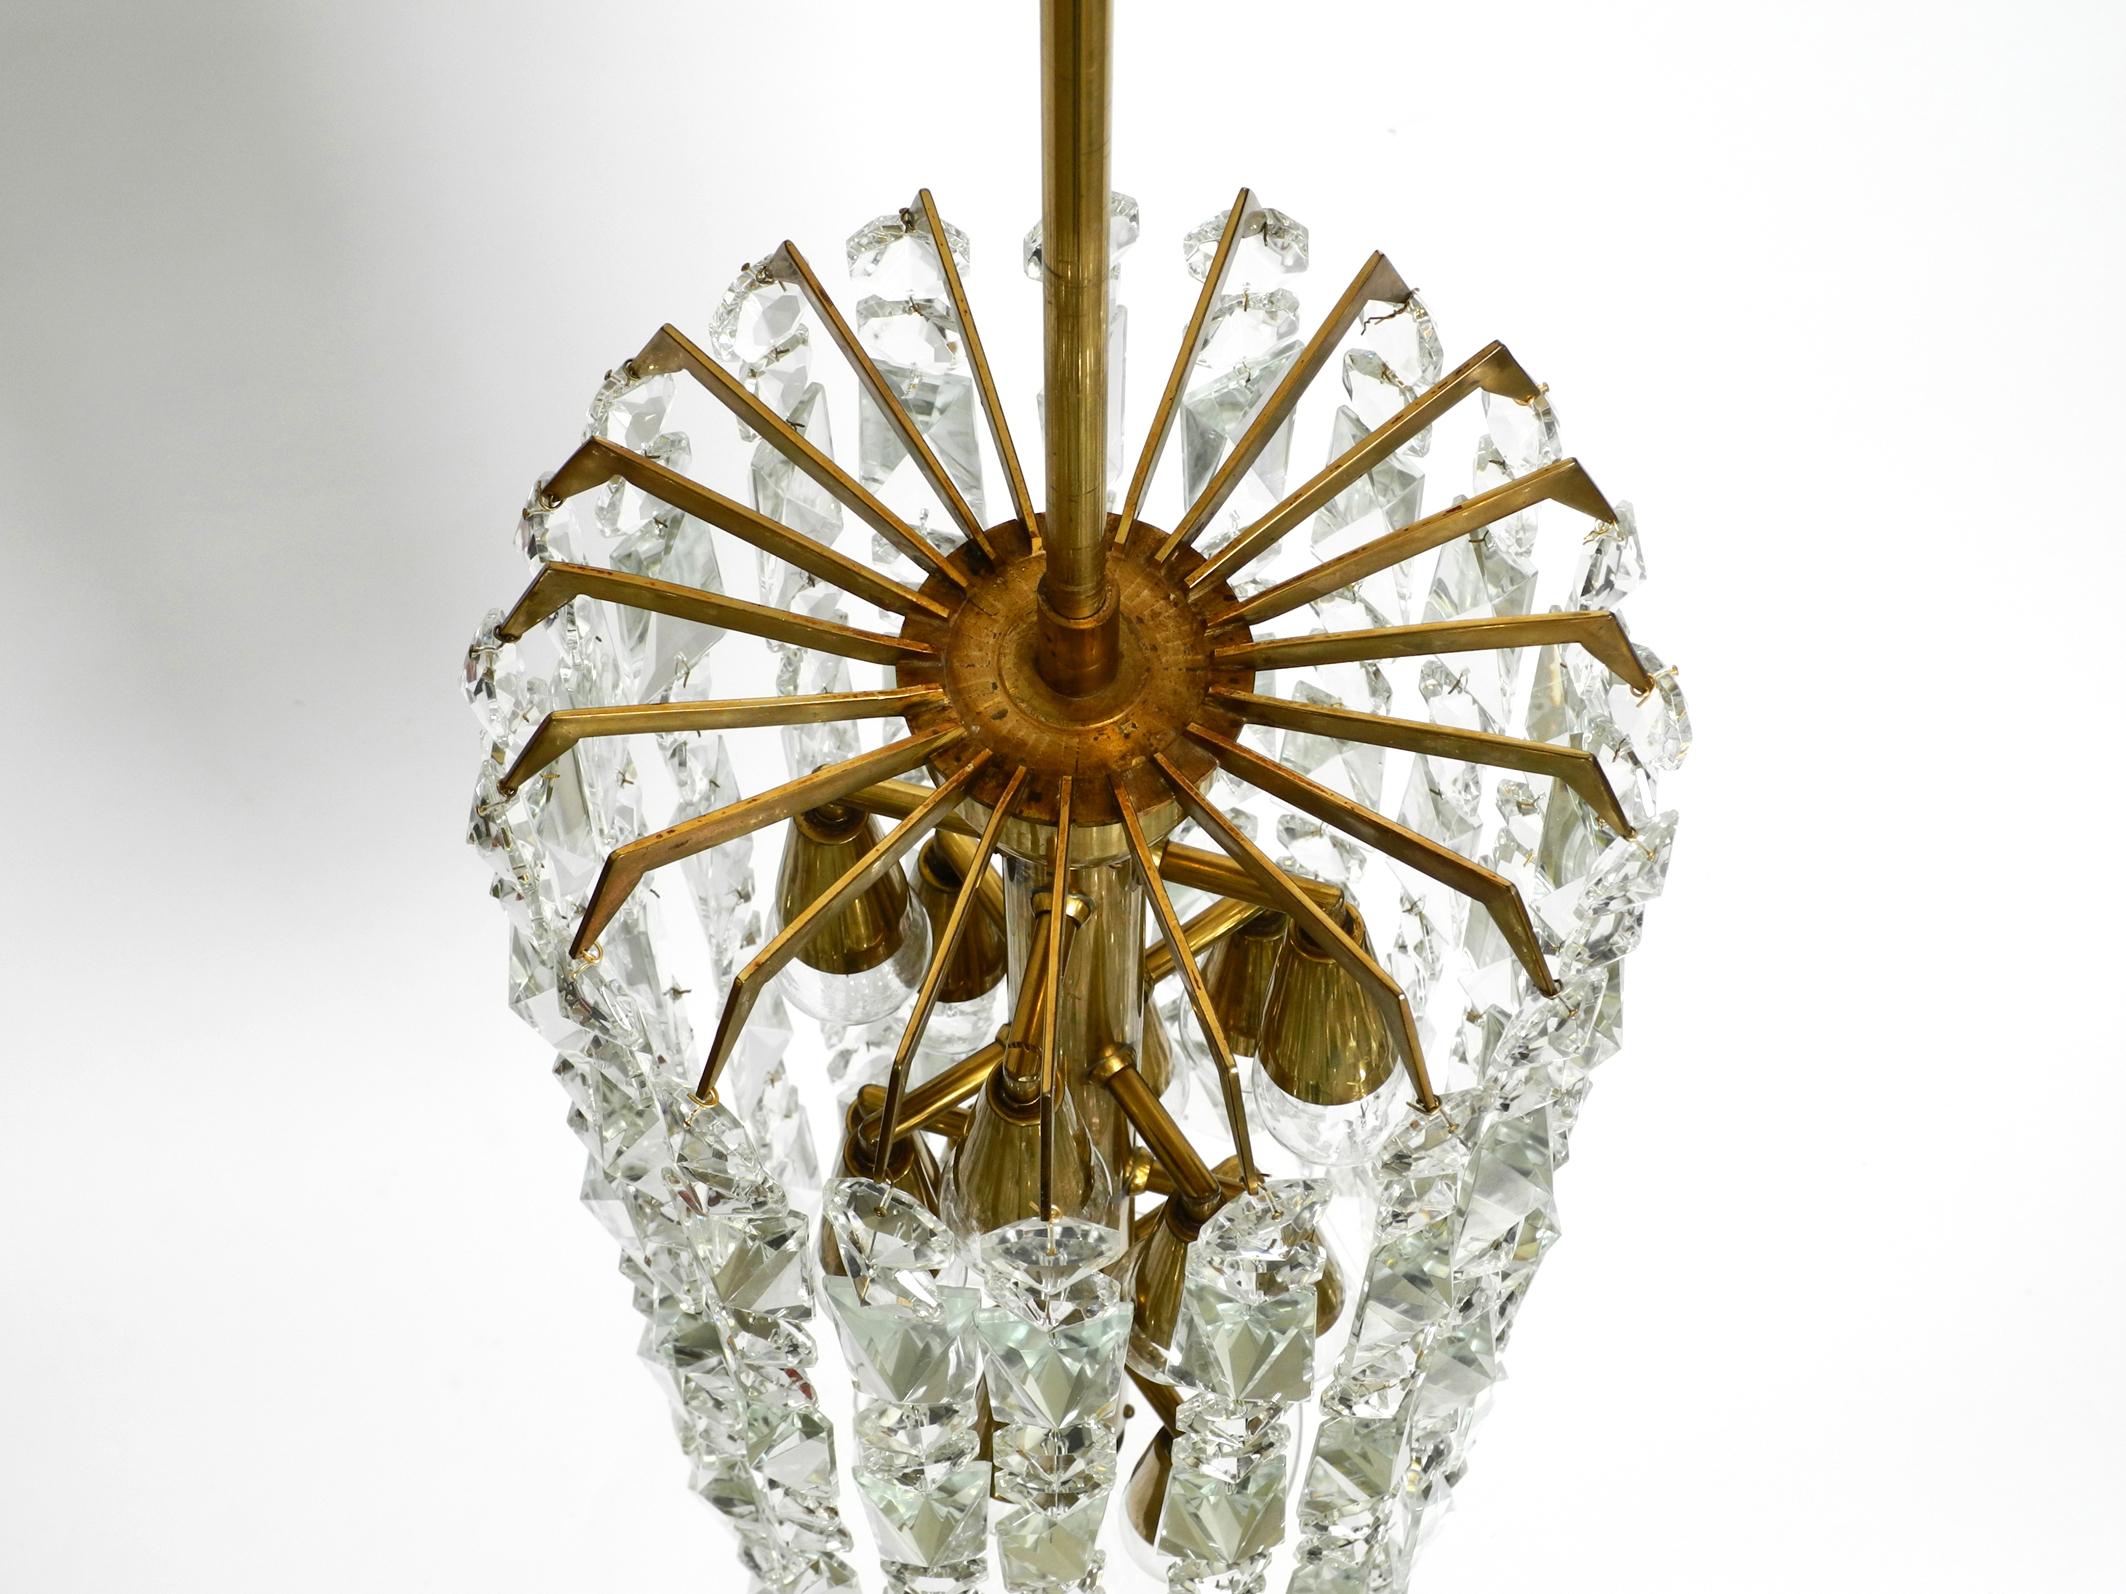 Beautiful Midcentury Brass Crystal Glass Chandelier from Vereinigte Werkstätten In Good Condition For Sale In München, DE